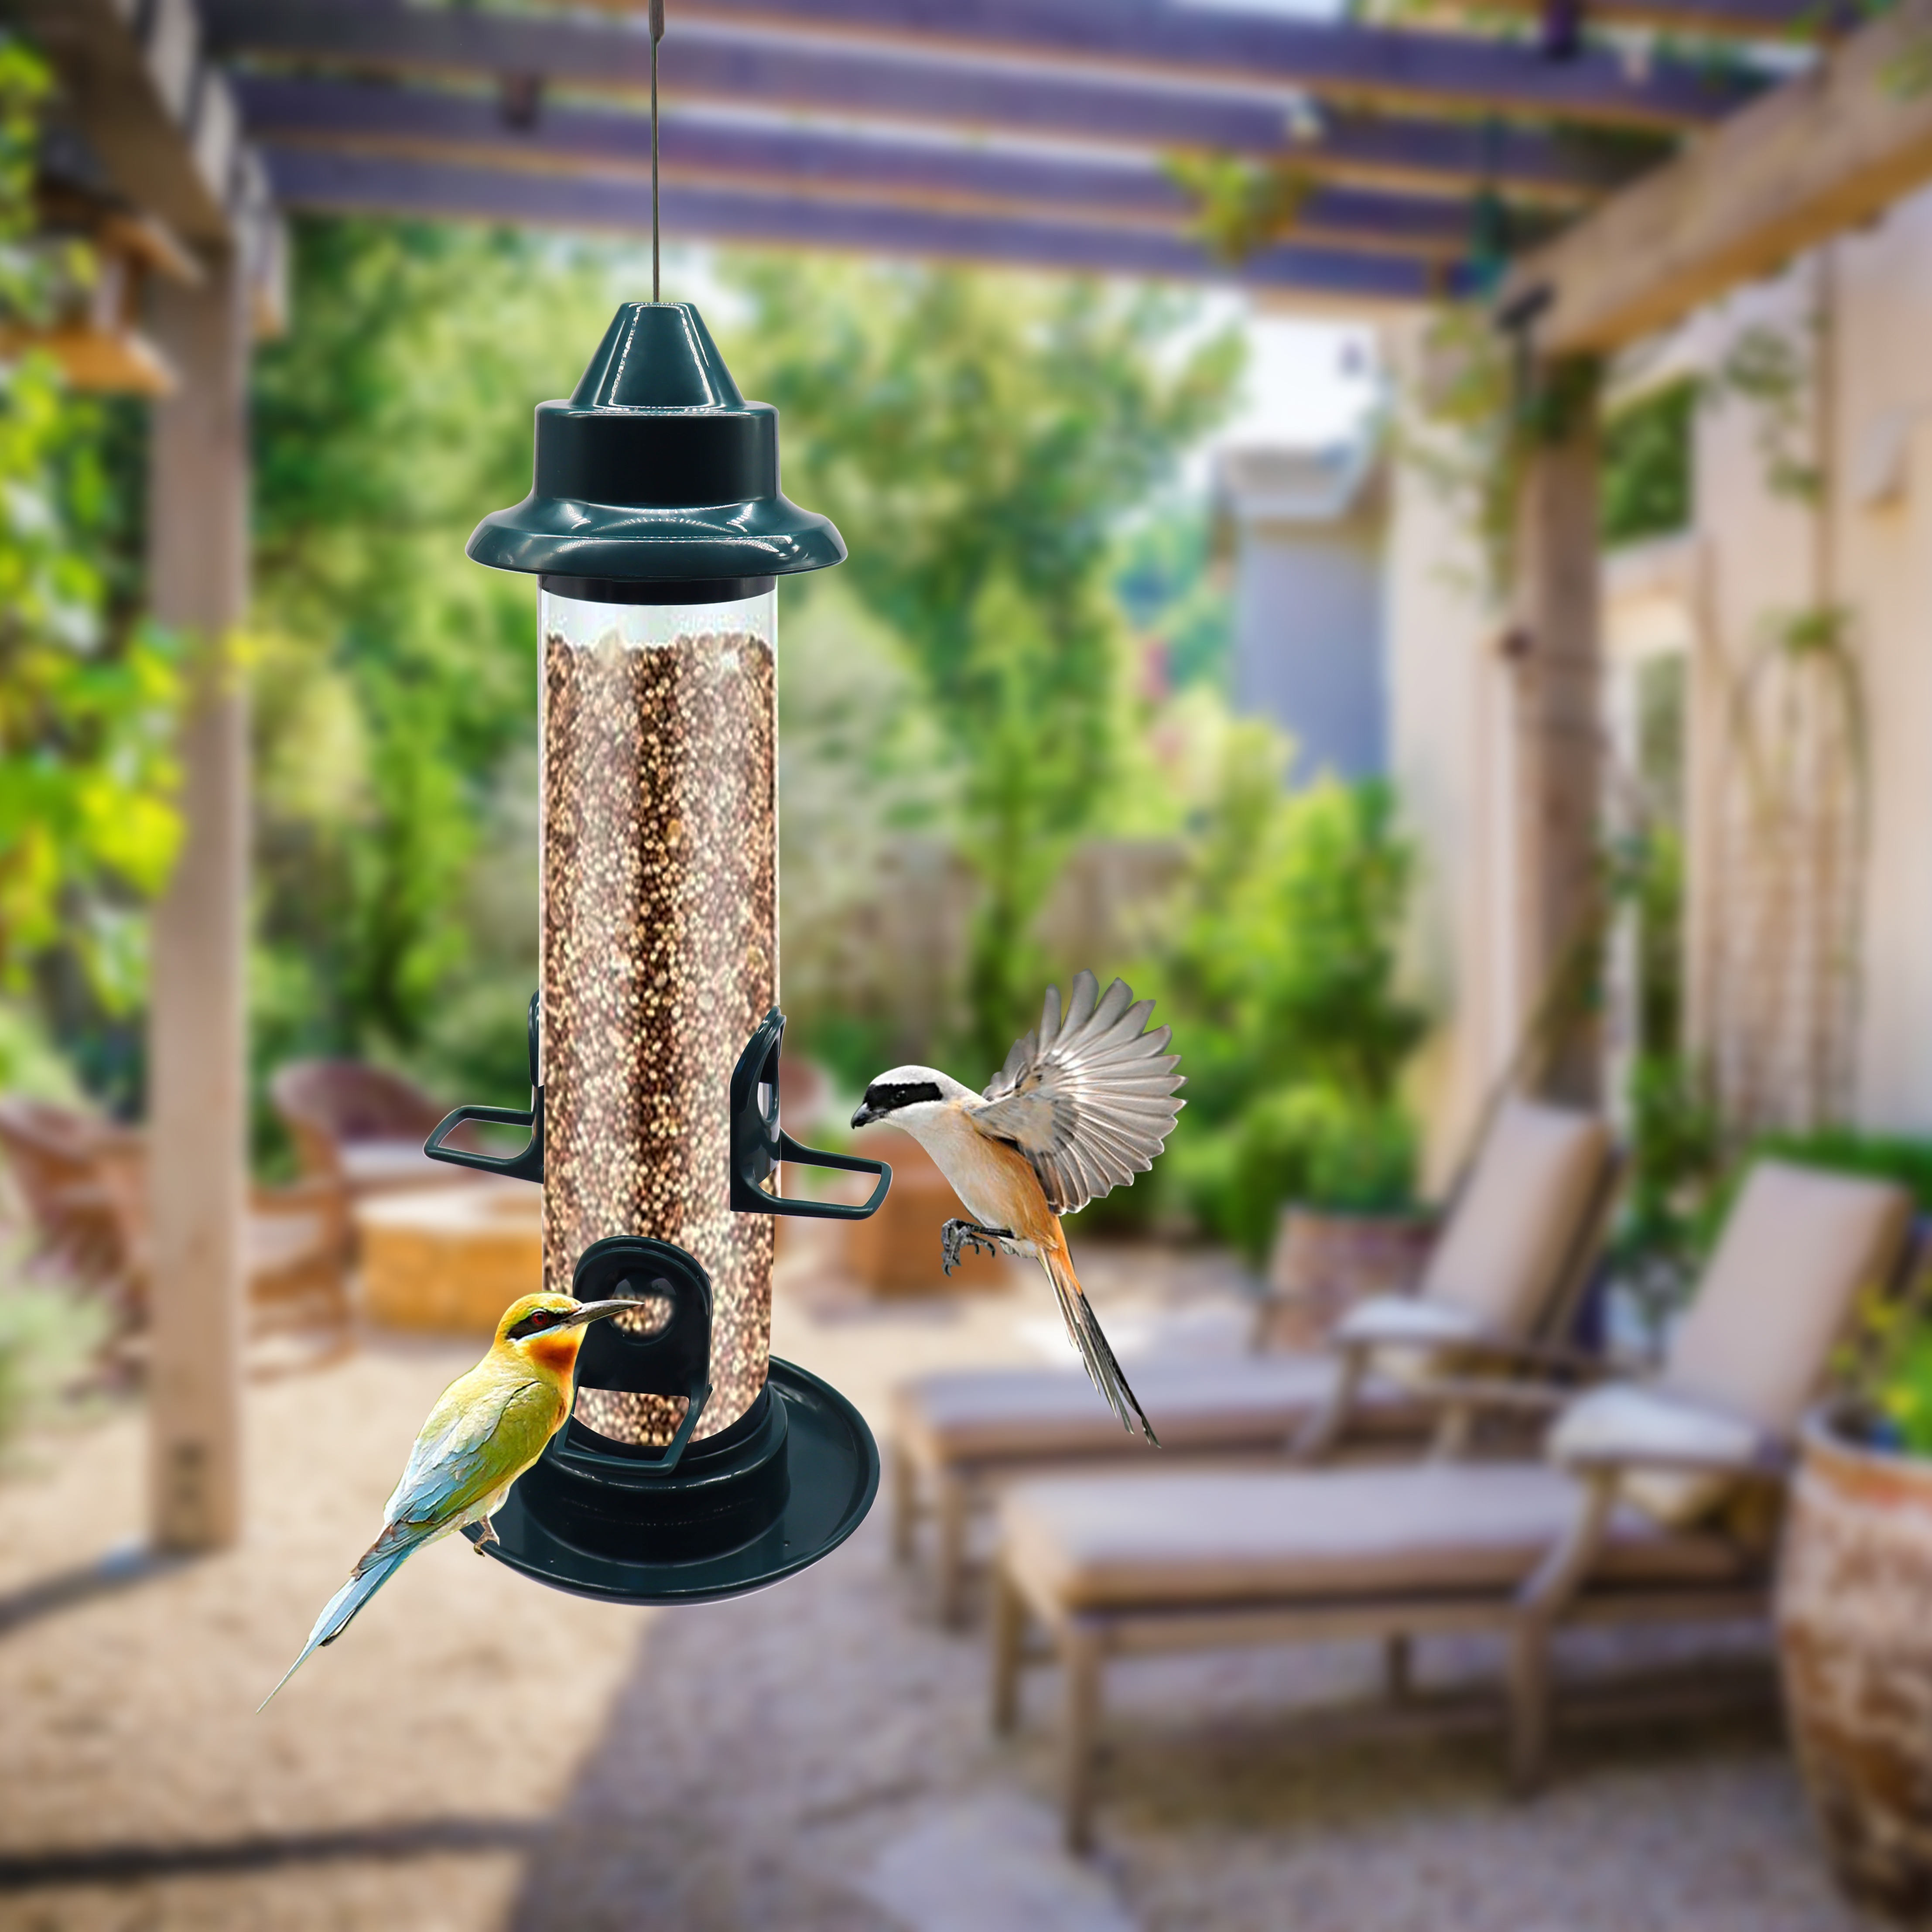 Mangeoire oiseau pour balcon : pourquoi c'est une bonne idée facile à  réaliser en famille ! On vous dit tout !